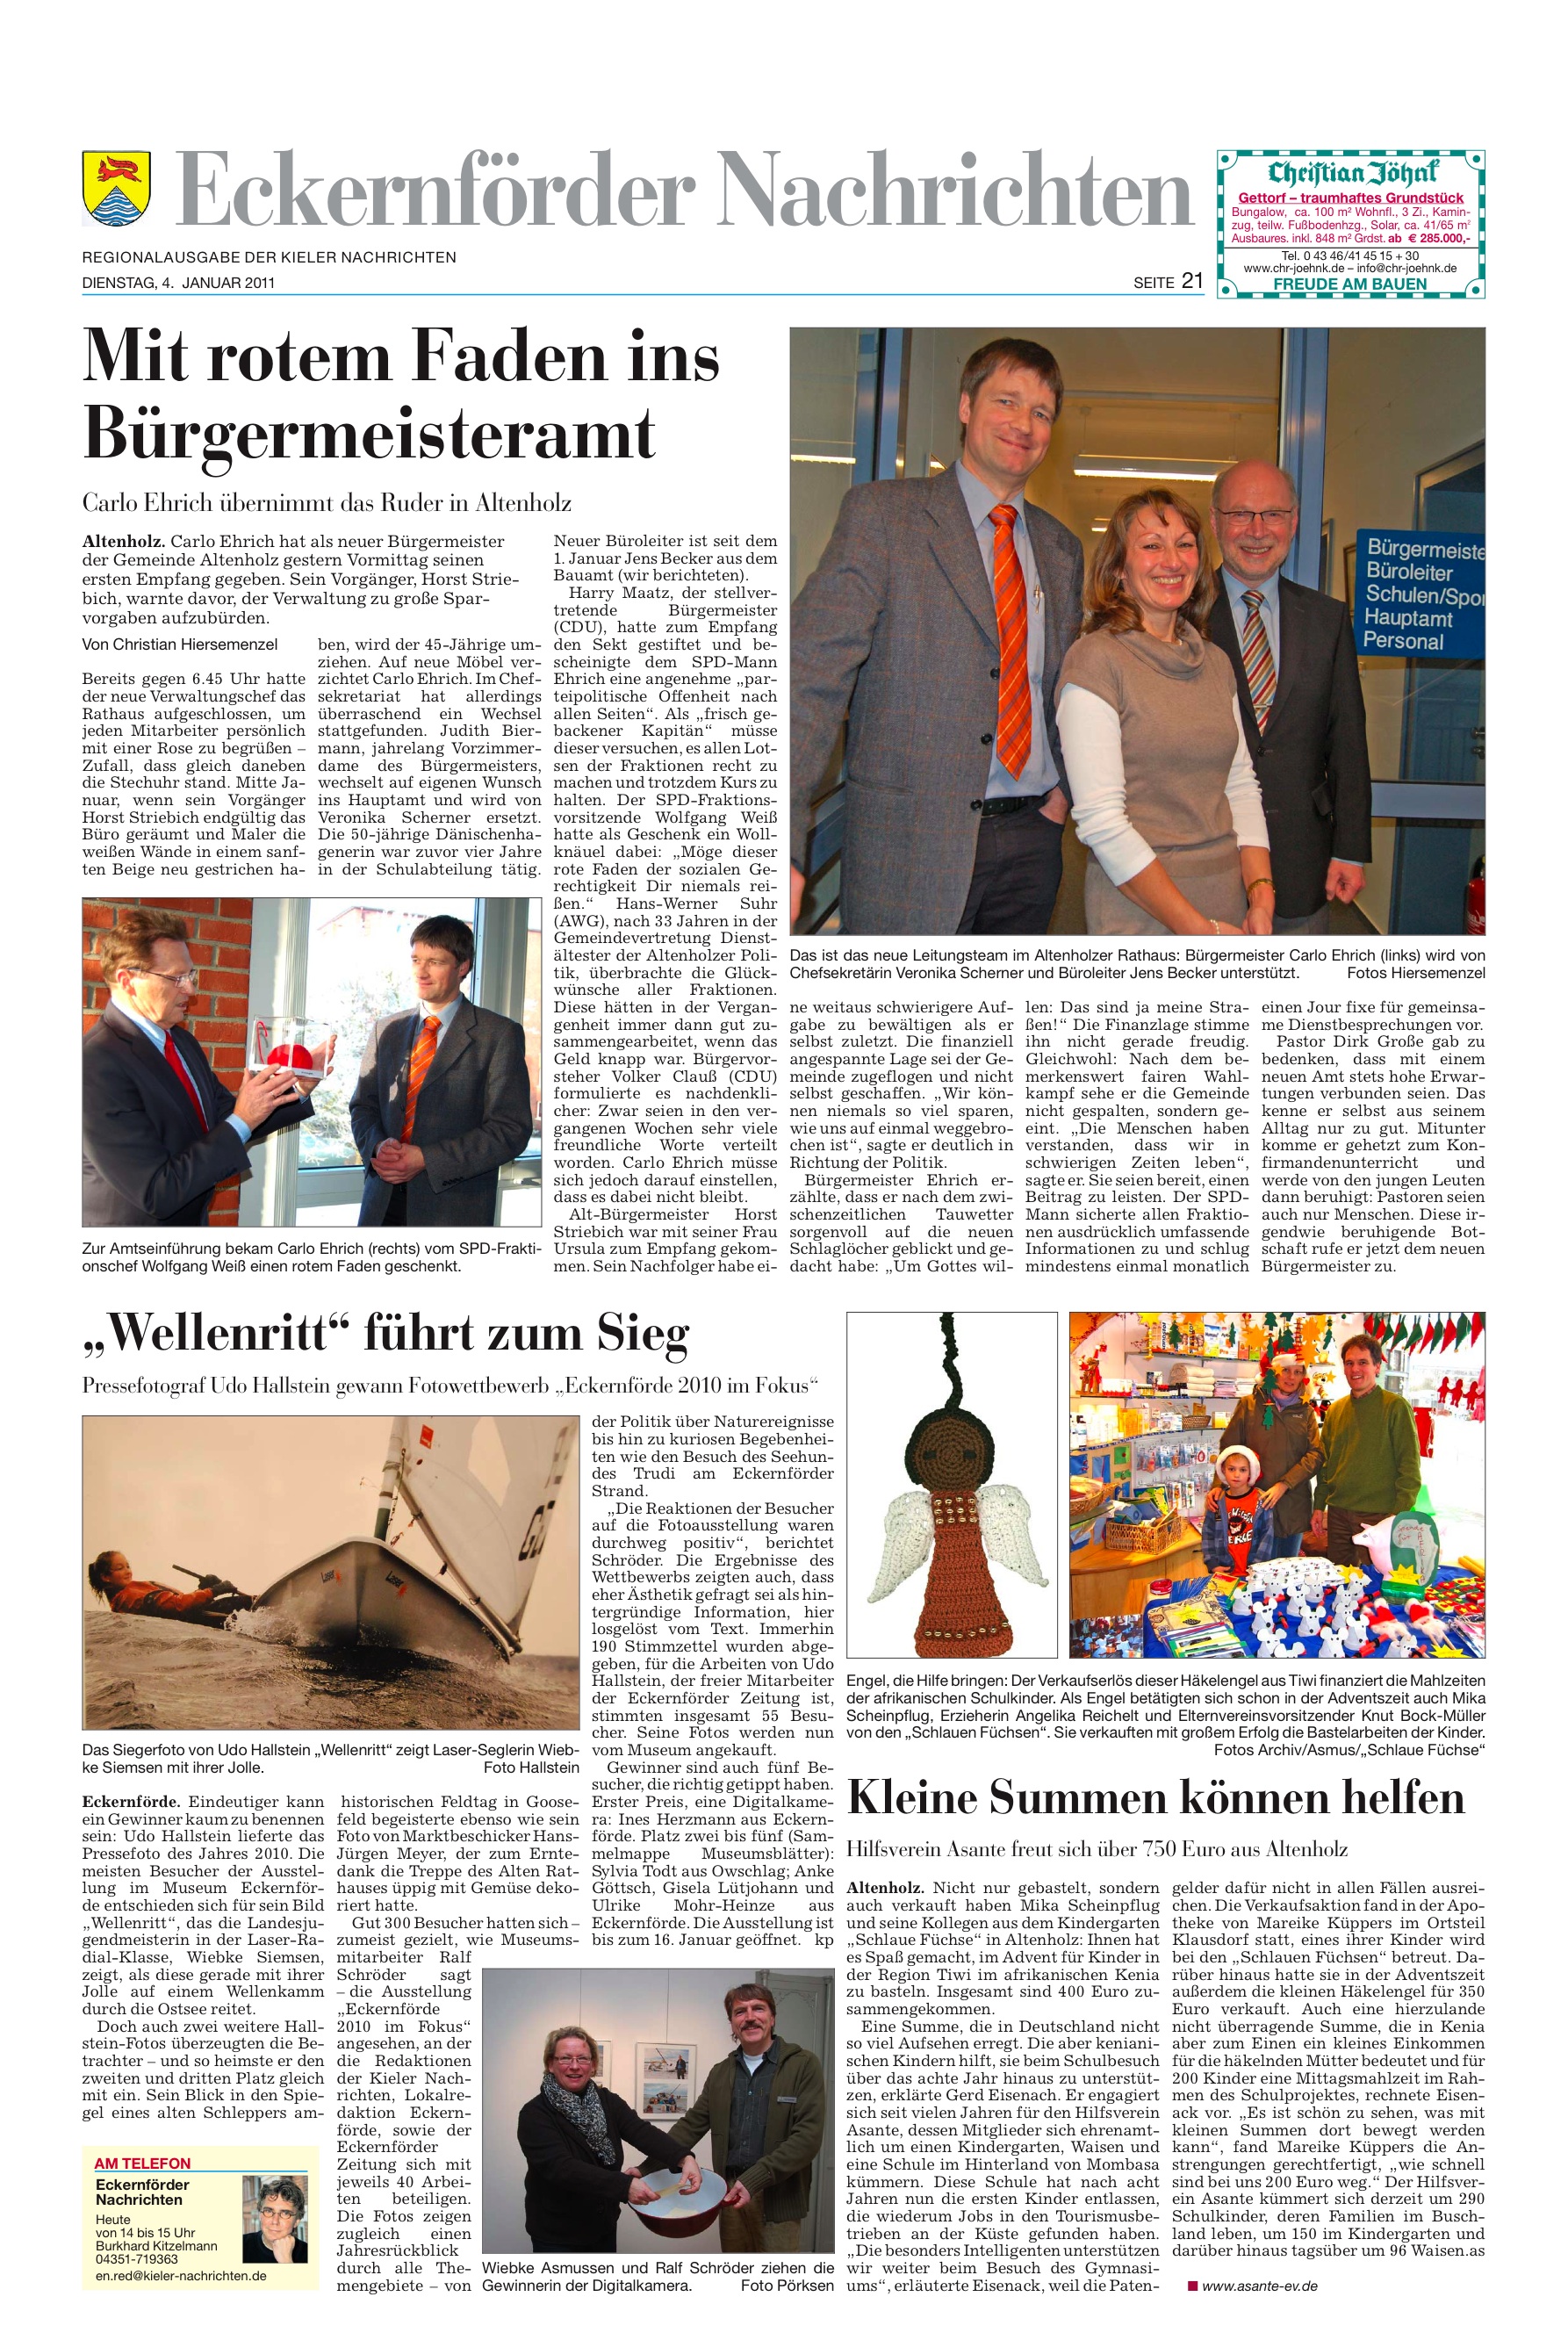 "Eckernförder Nachrichten" 4. Januar 2011